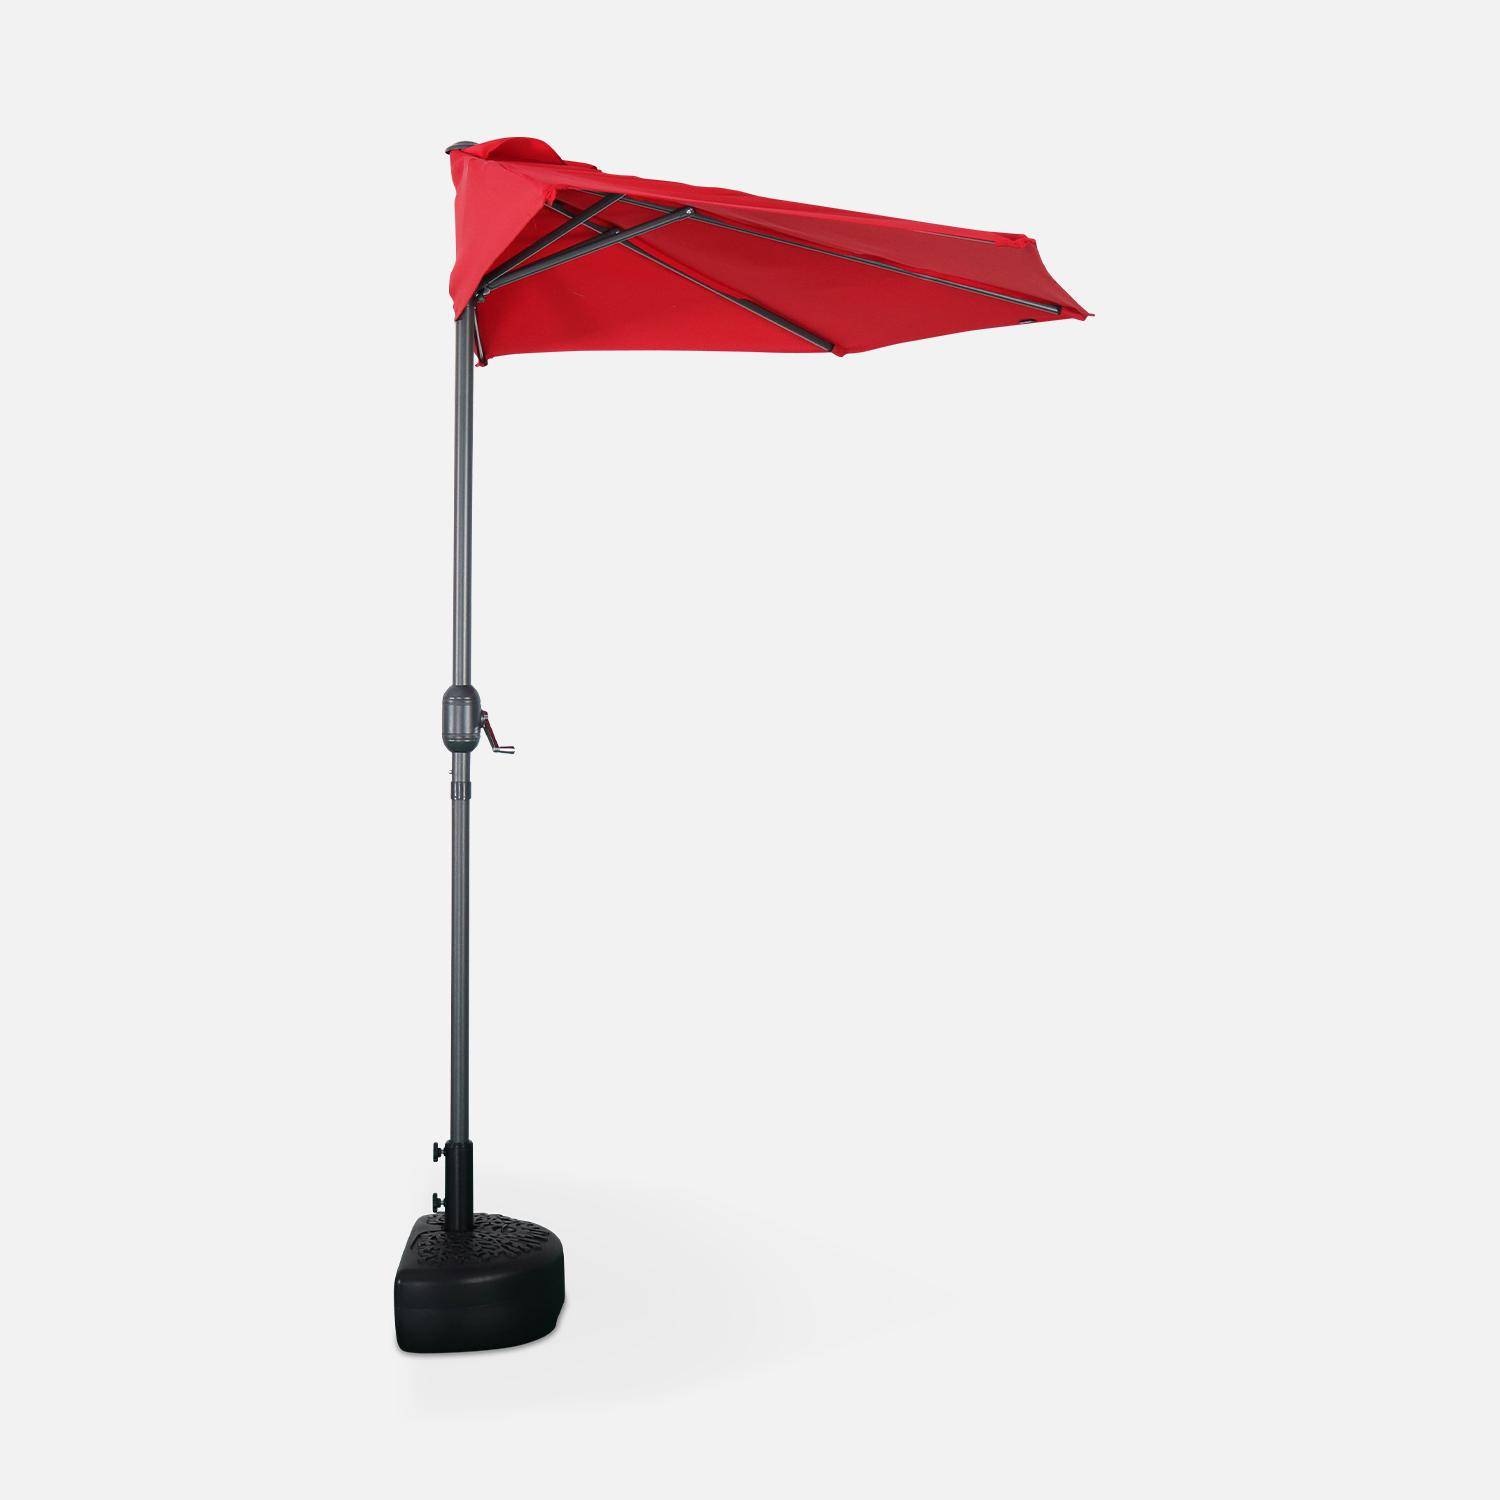  Parasol para balcón Ø250cm  – CALVI – Pequeño parasol recto, mástil en aluminio con manivela, tela color rojo Photo4